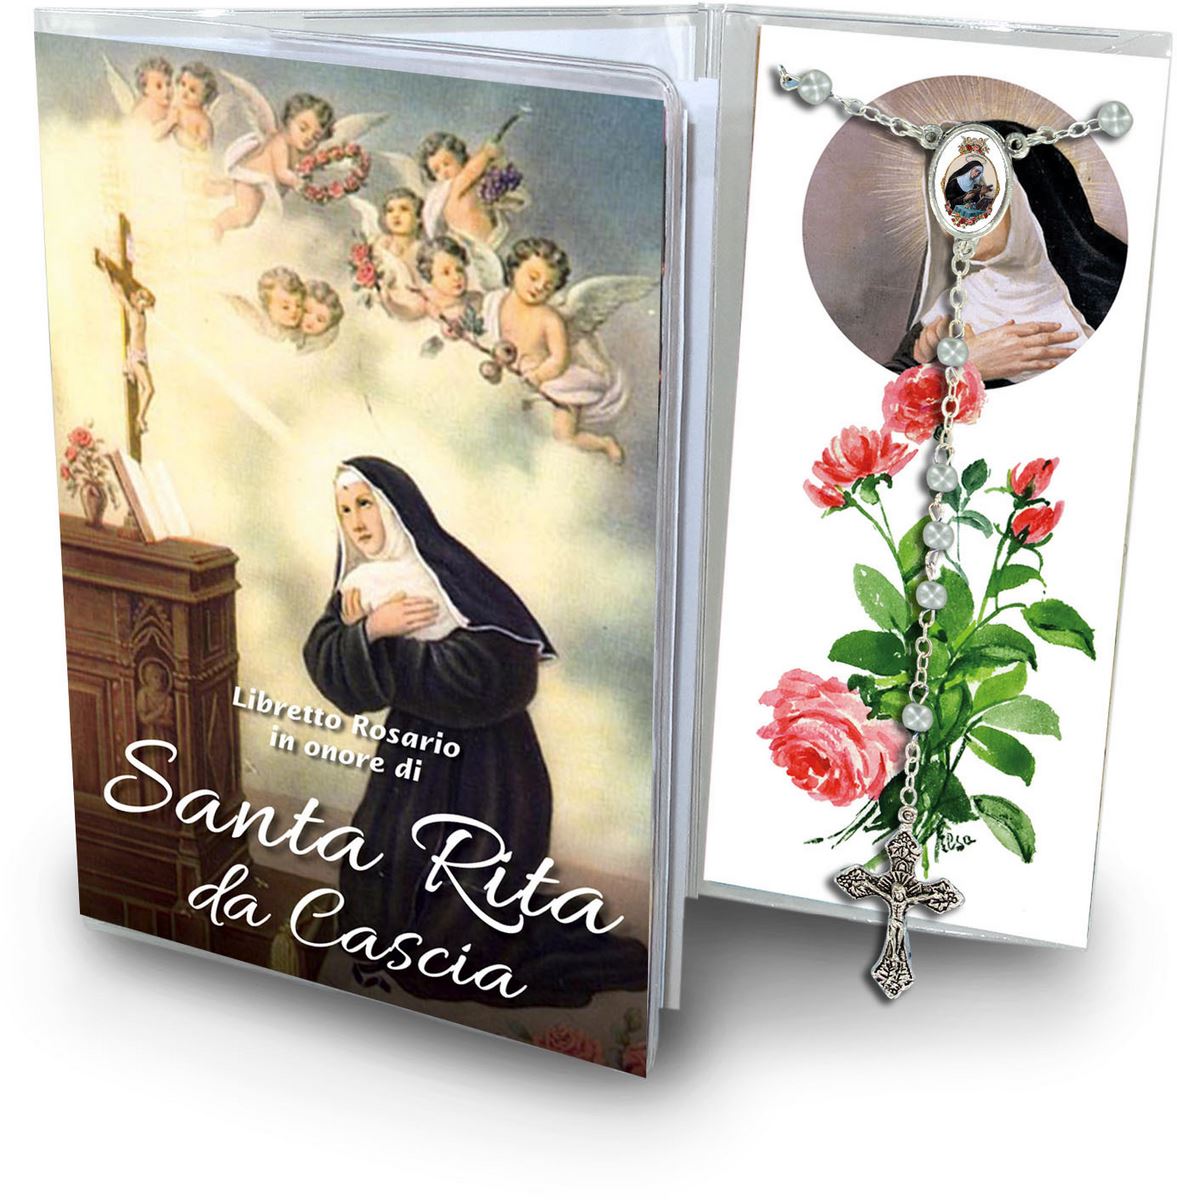 libretto con rosario santa rita da cascia - italiano